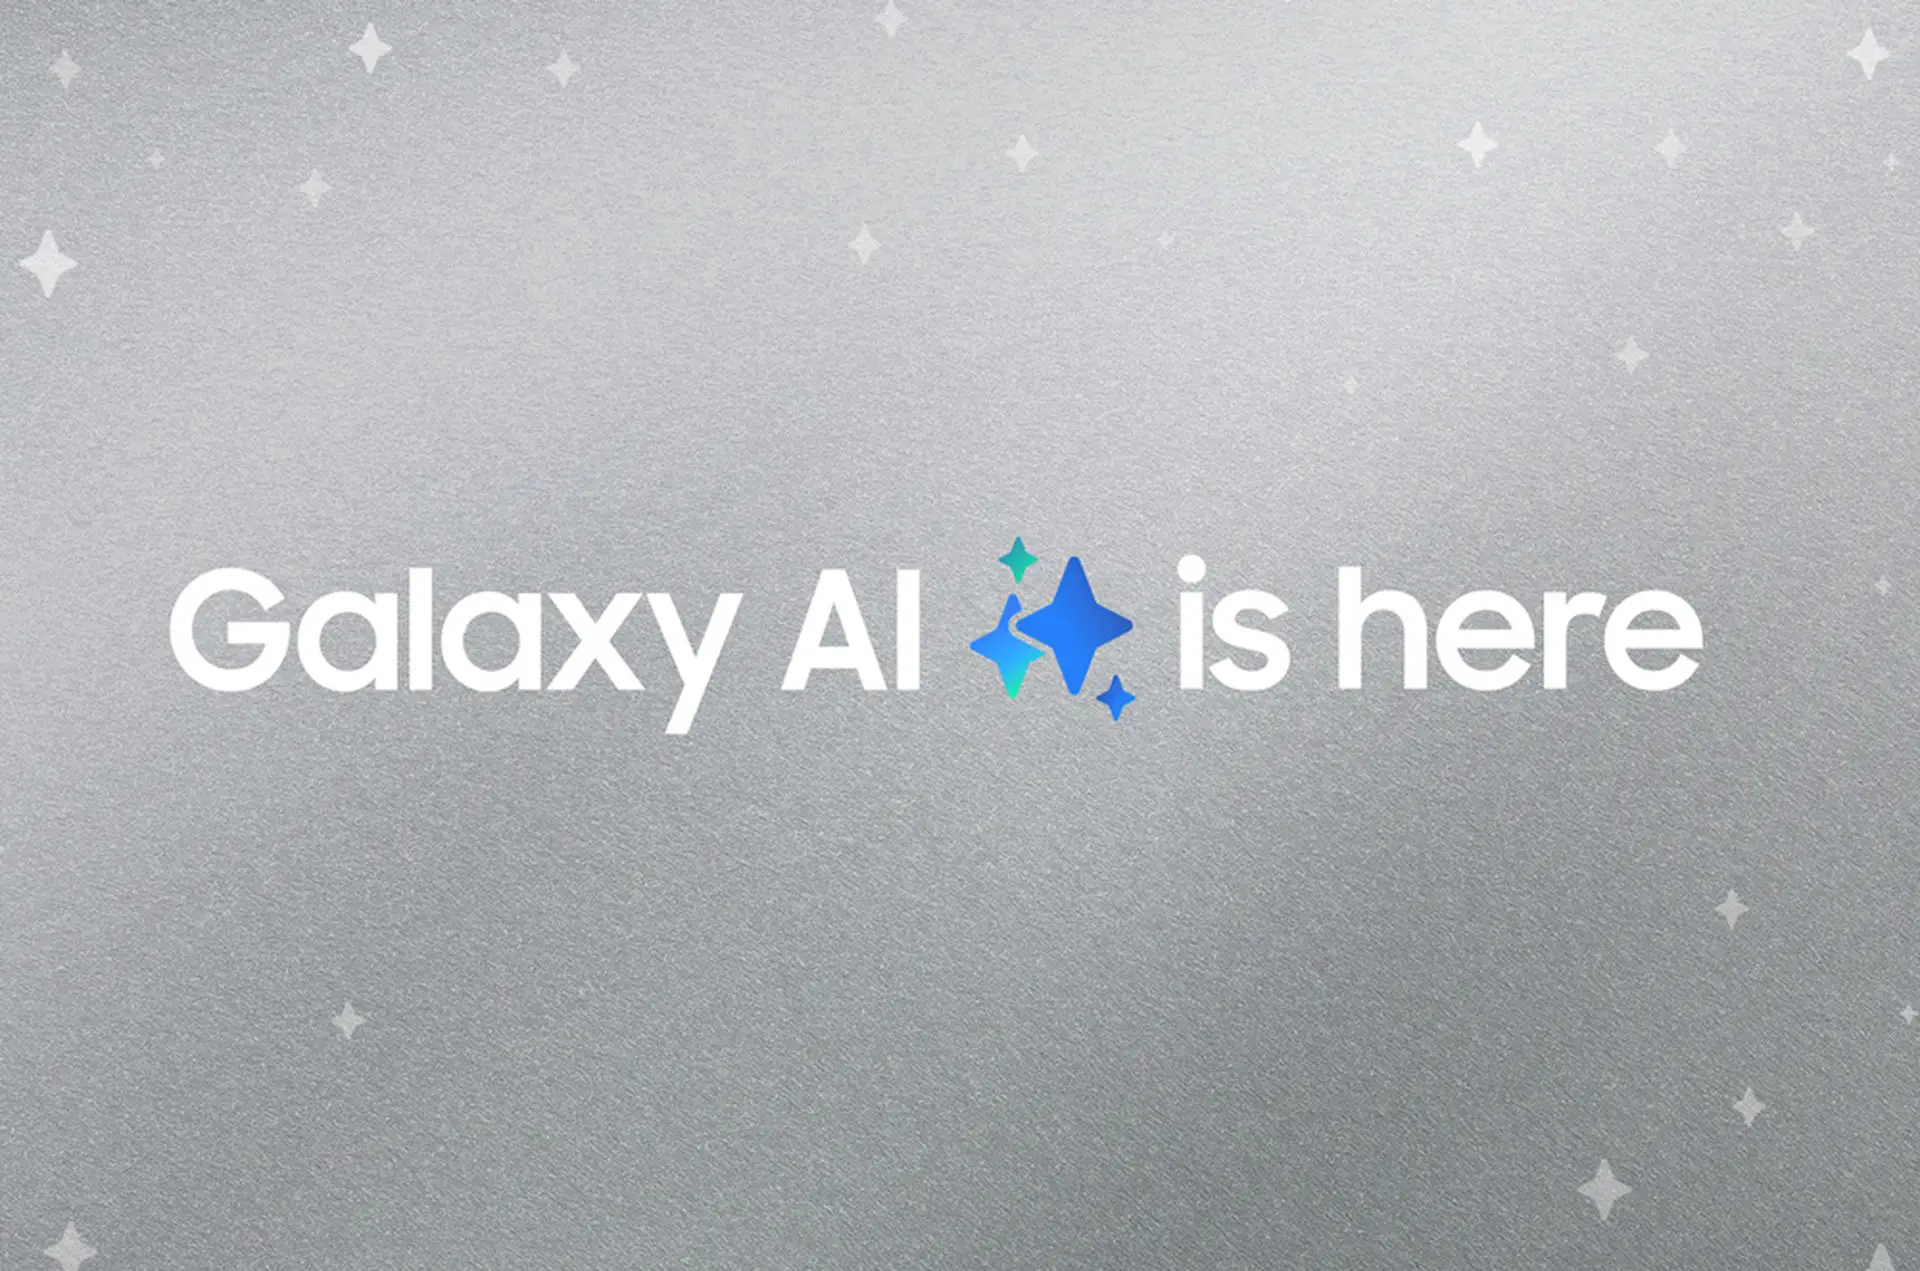 Samsung'un yeni serisi Galaxy S24 ve Galaxy AI'a detaylı bakış